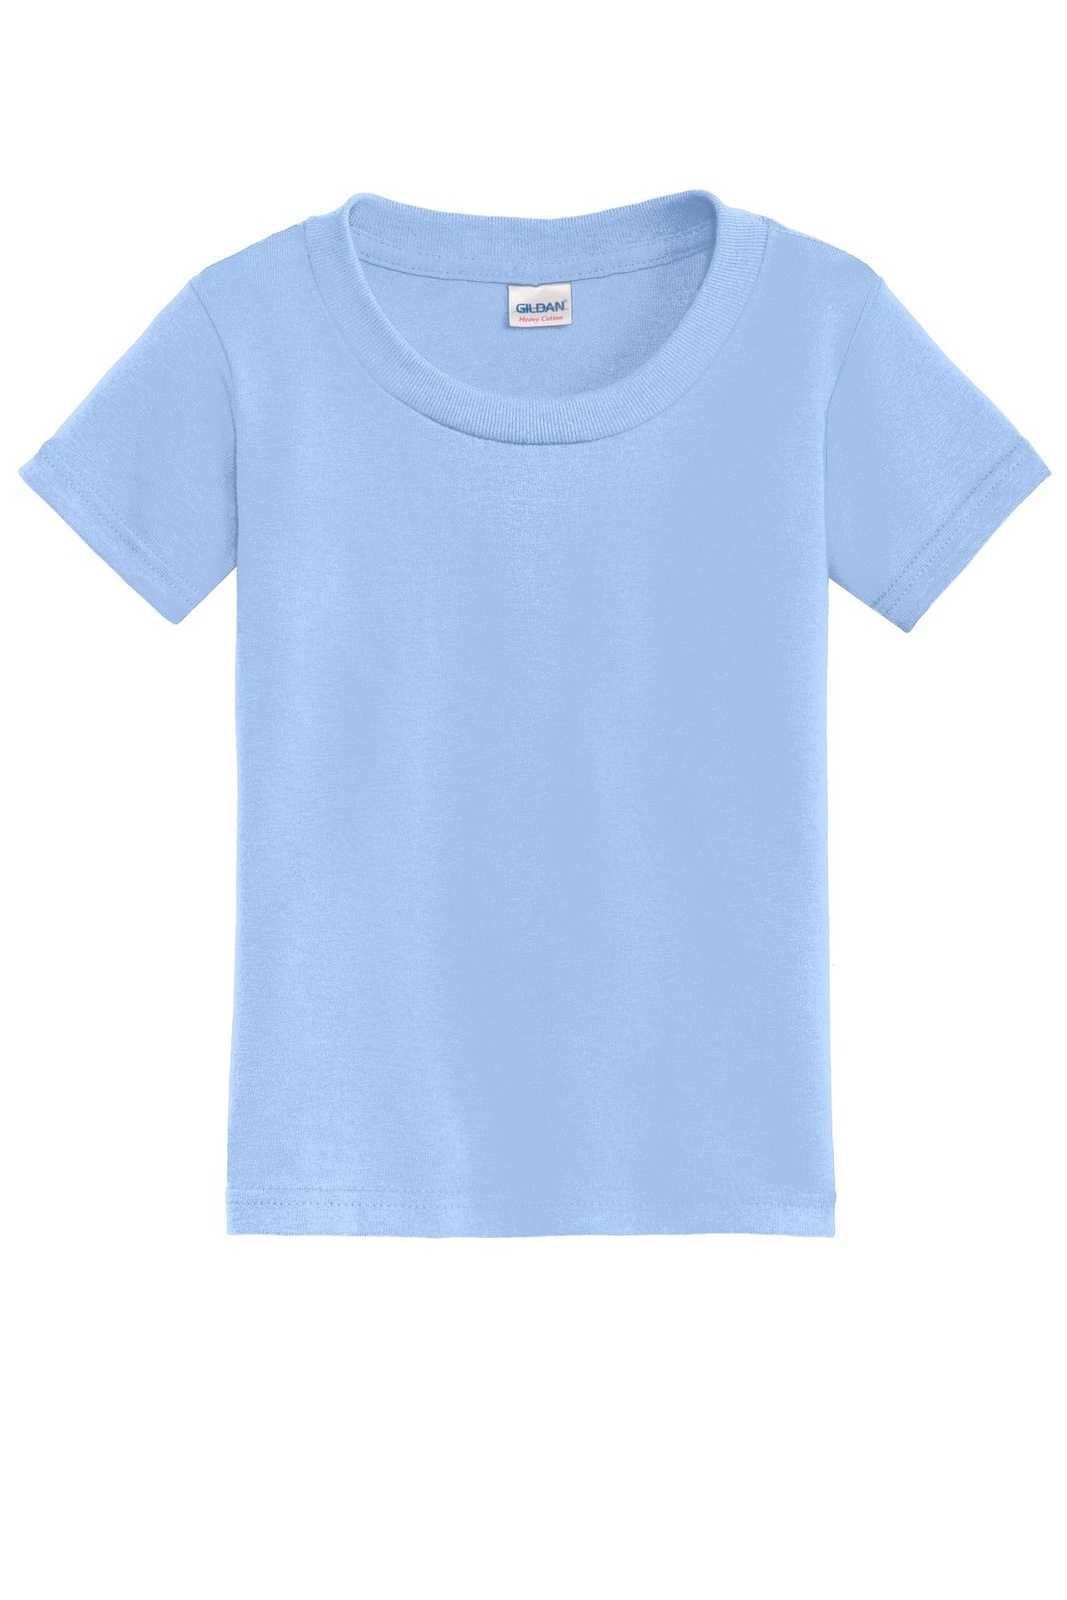 Gildan 5100P Toddler Heavy Cotton 100% Cotton T-Shirt - Light Blue - HIT a Double